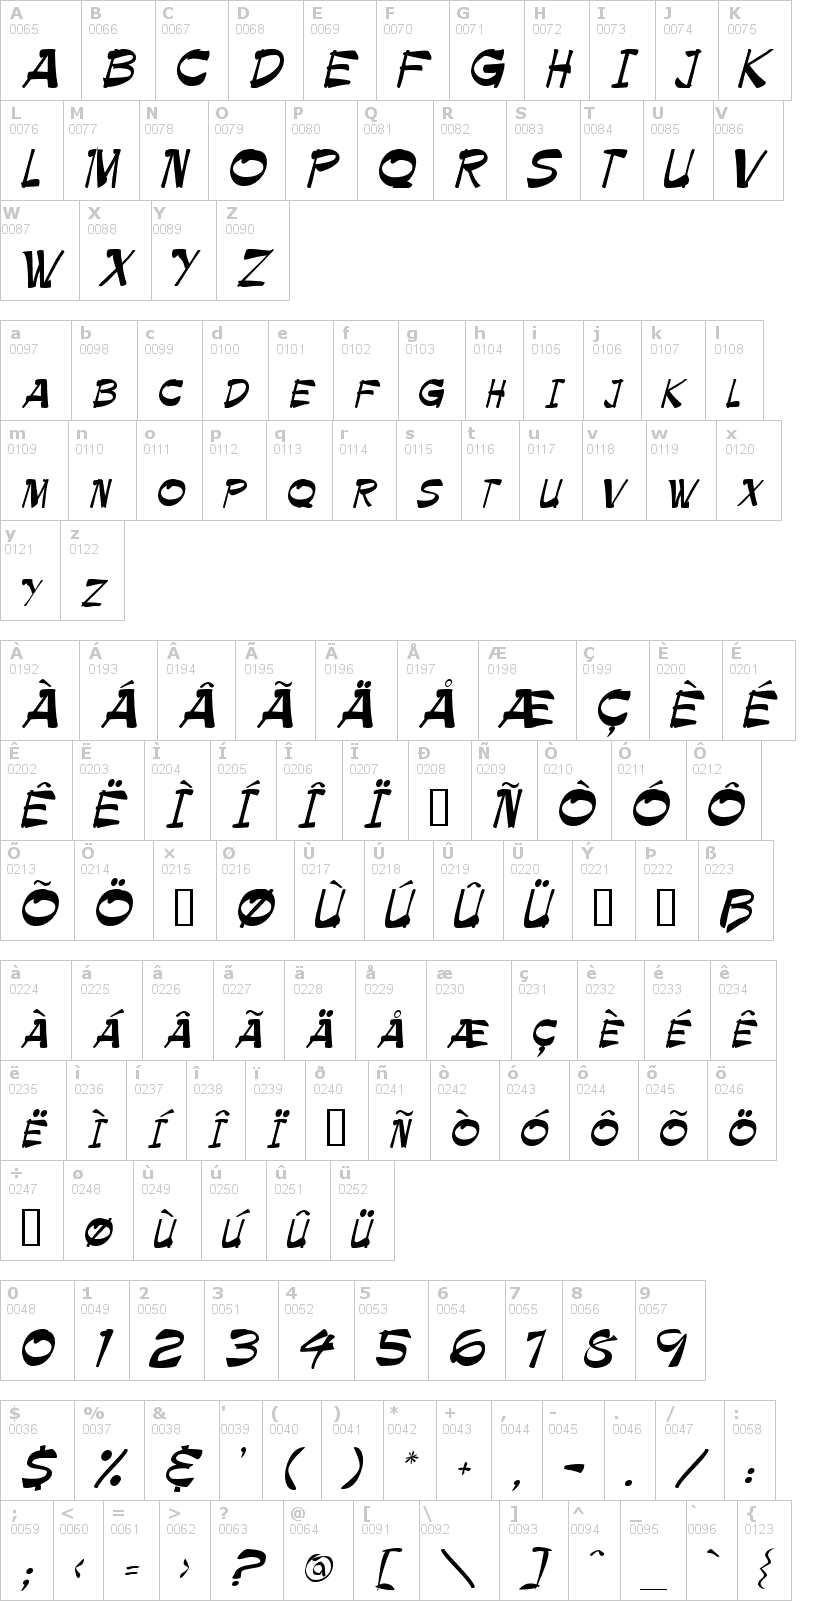 Lettere dell'alfabeto del font ballot con le quali è possibile realizzare adesivi prespaziati